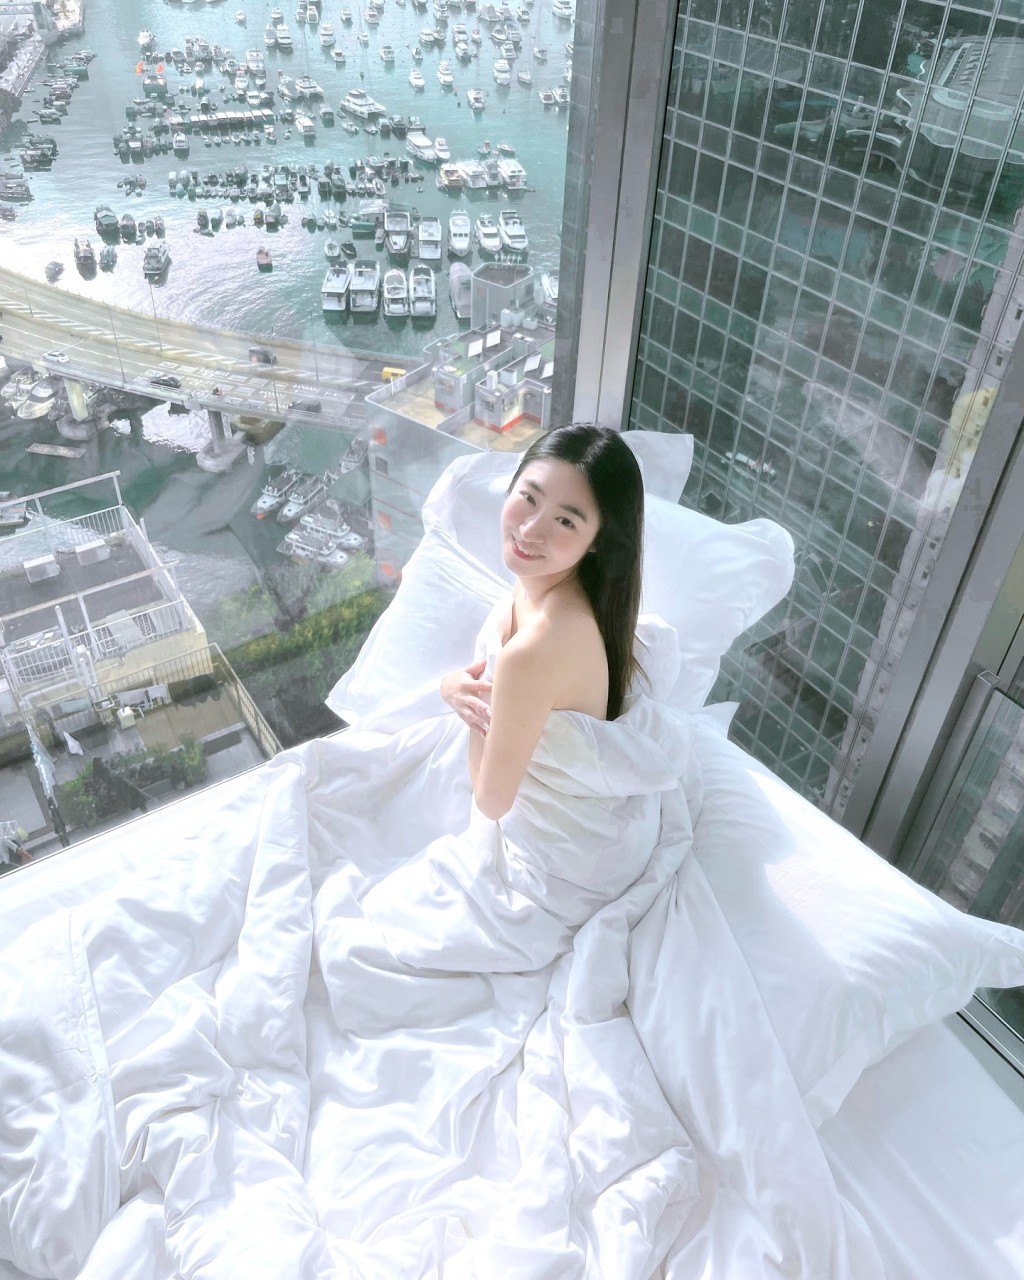 黄紫恩早前分享一张疑似在天后一间酒店打卡的床照。